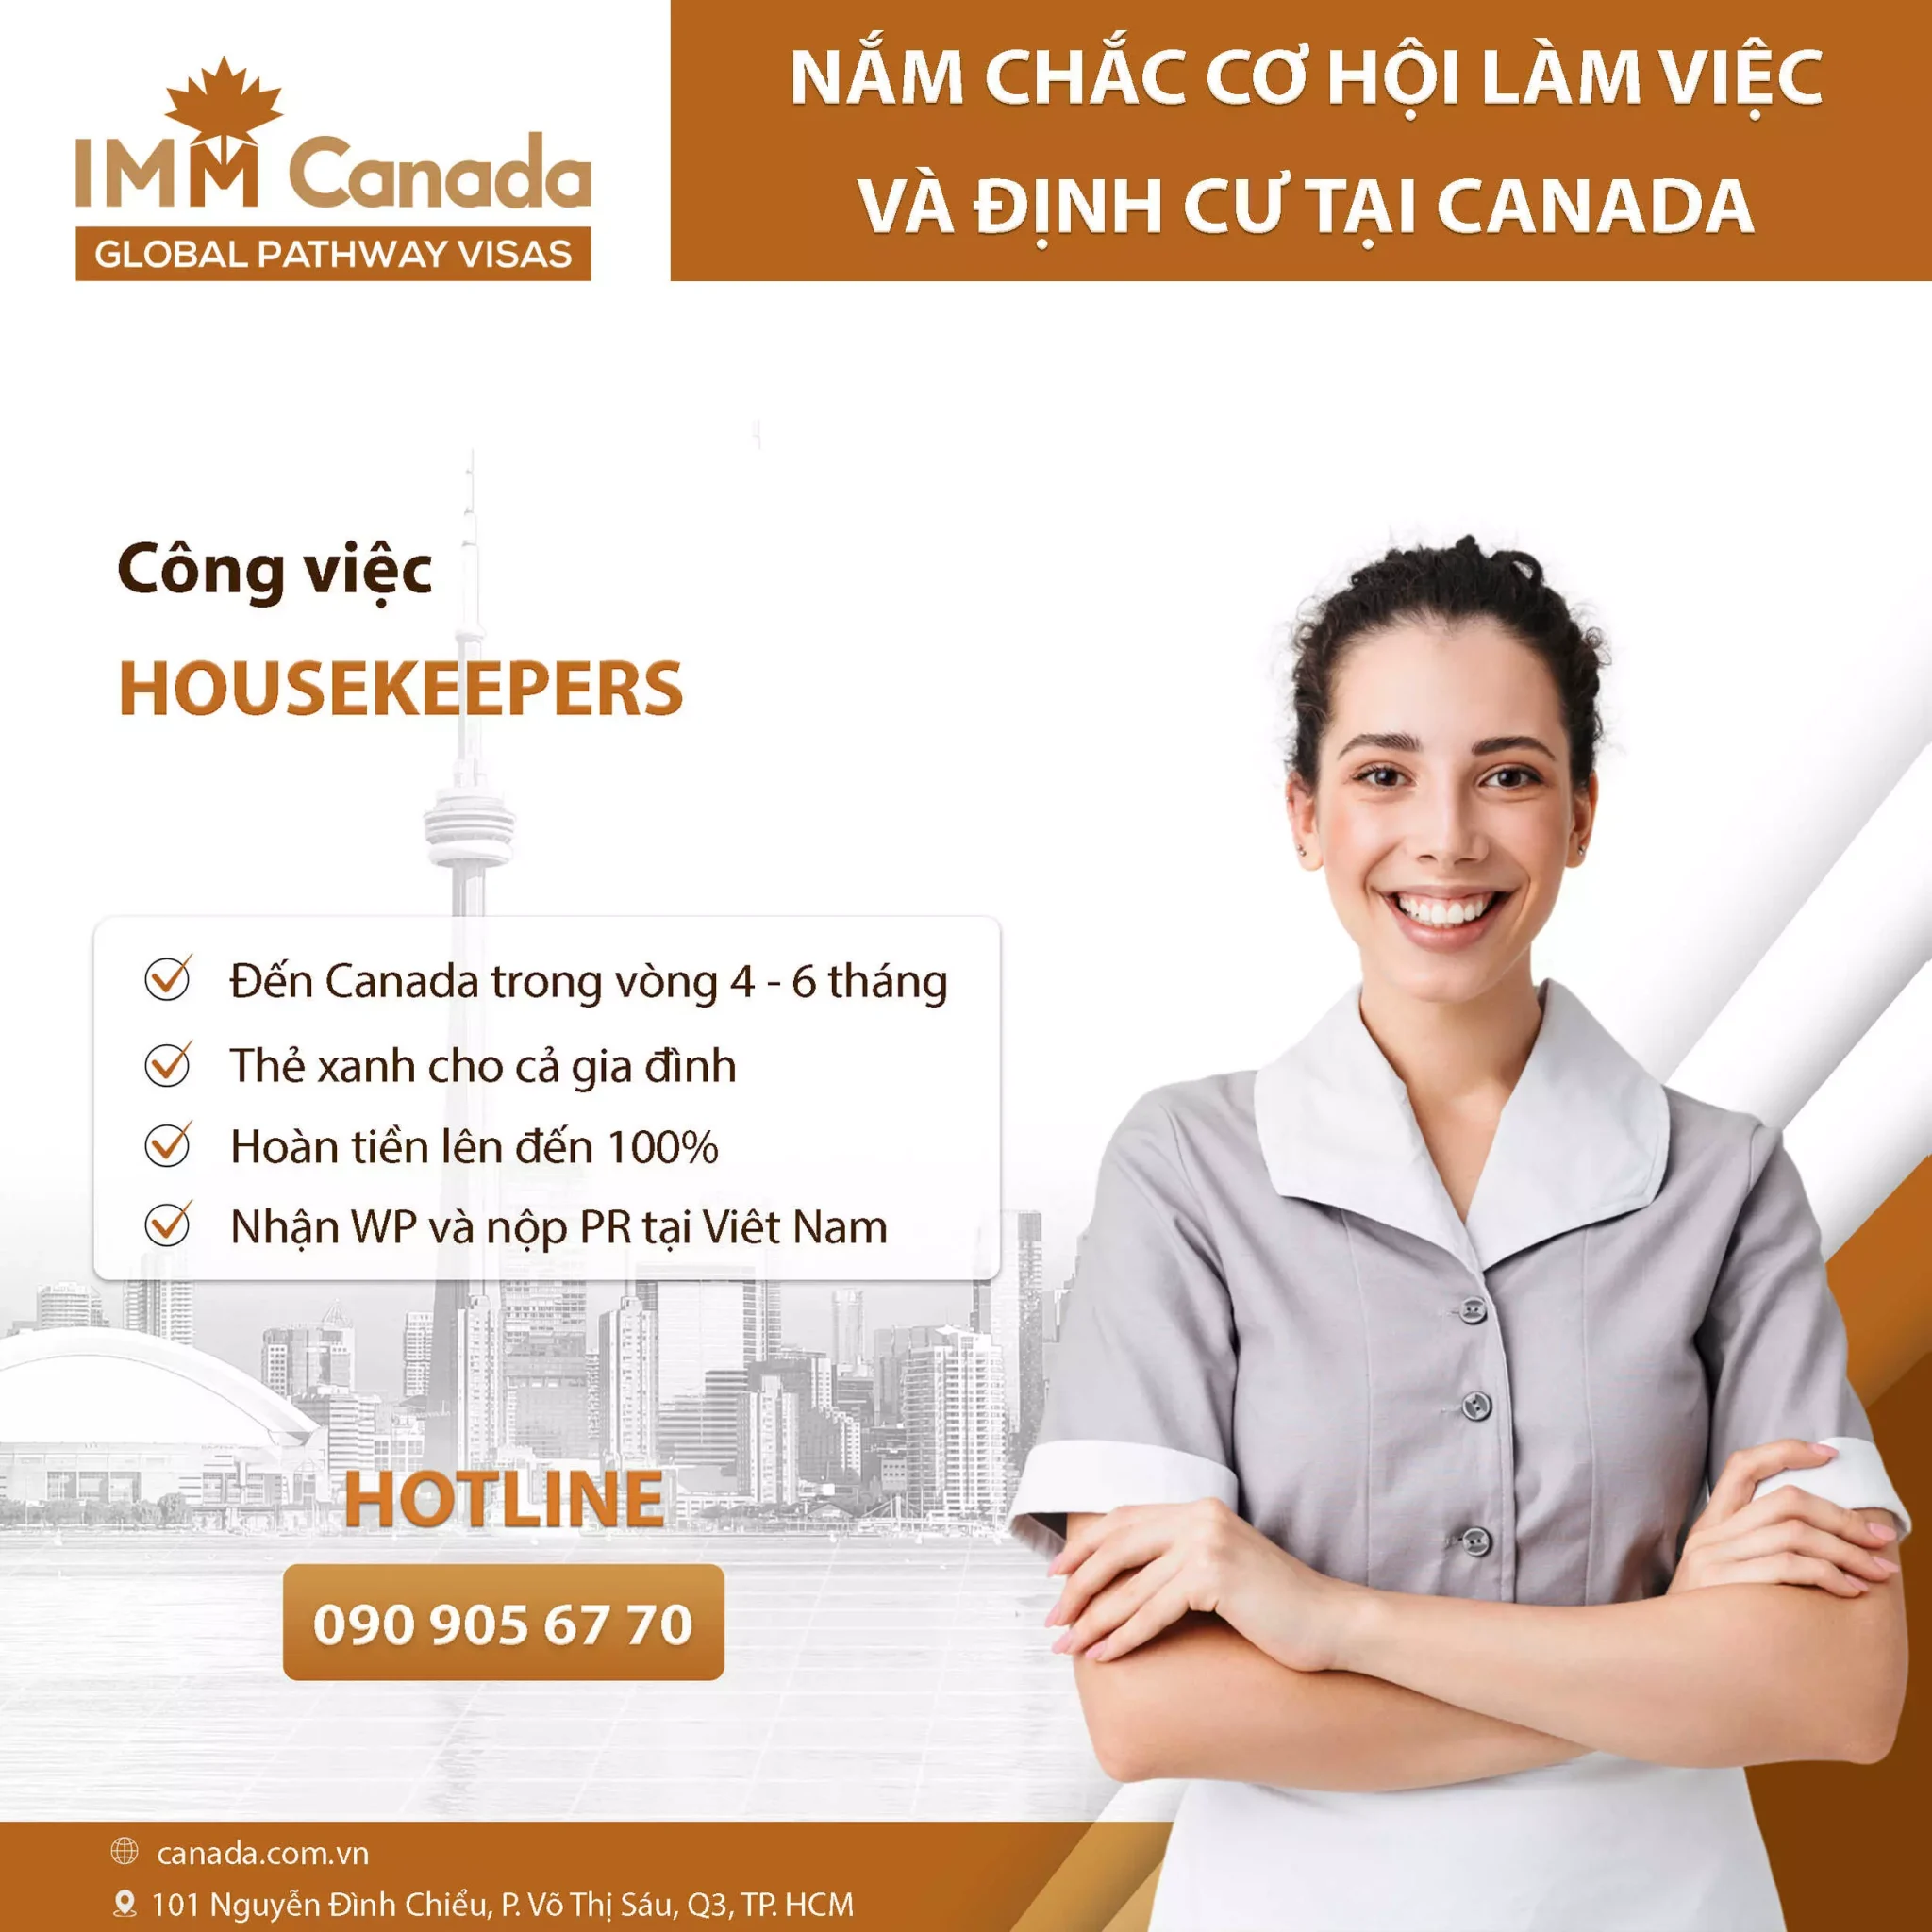 Canada tuyển dụng lao động phổ thông - Housekeepers